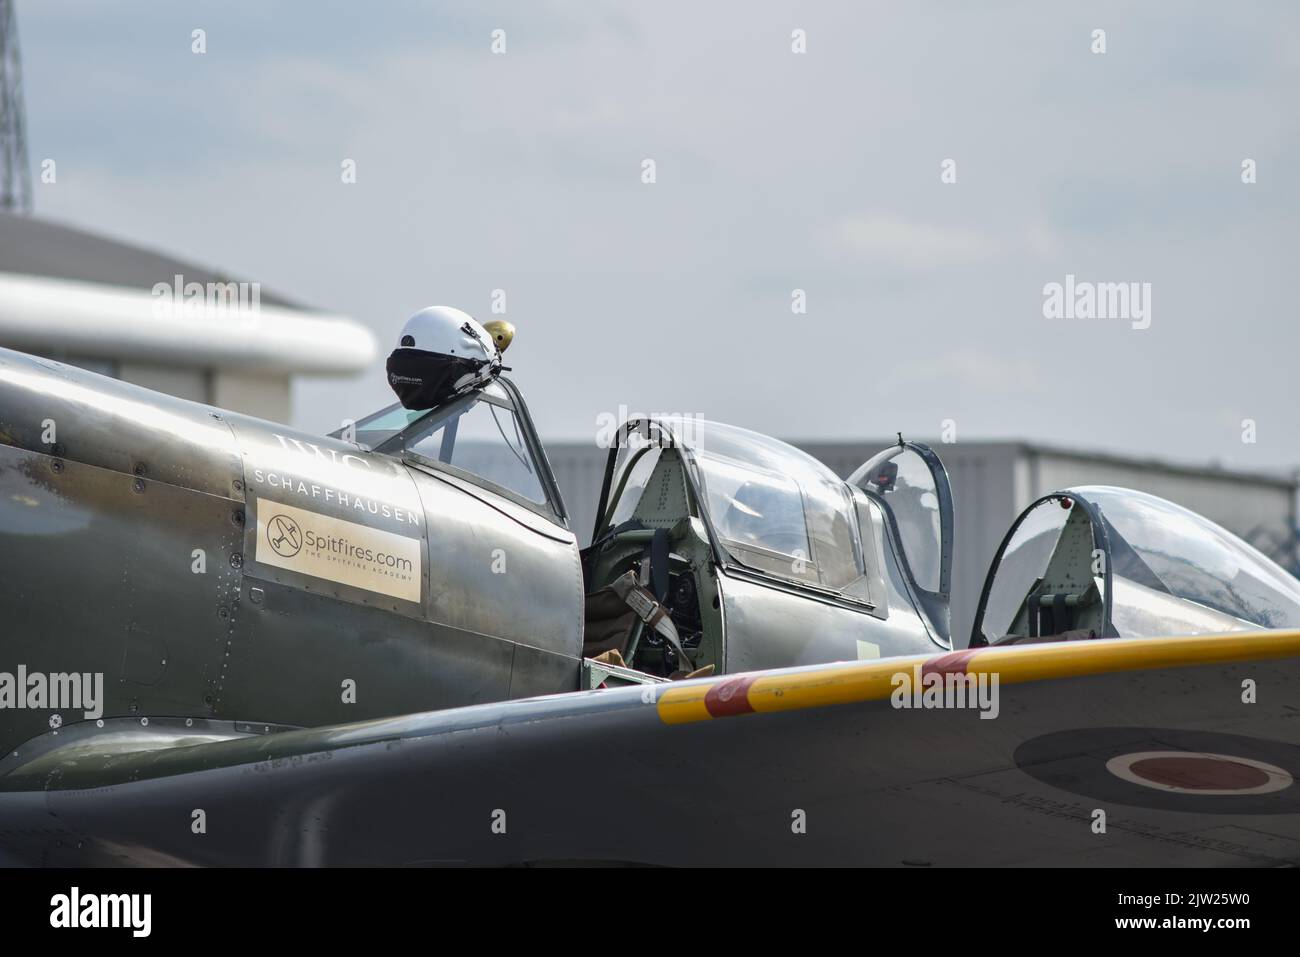 SM250 doppio posto Spitfire parcheggiato sulla pista dell'aeroporto Solent in Inghilterra. Tettuccio in vetro aperto e cabina di pilotaggio visibile. Foto Stock